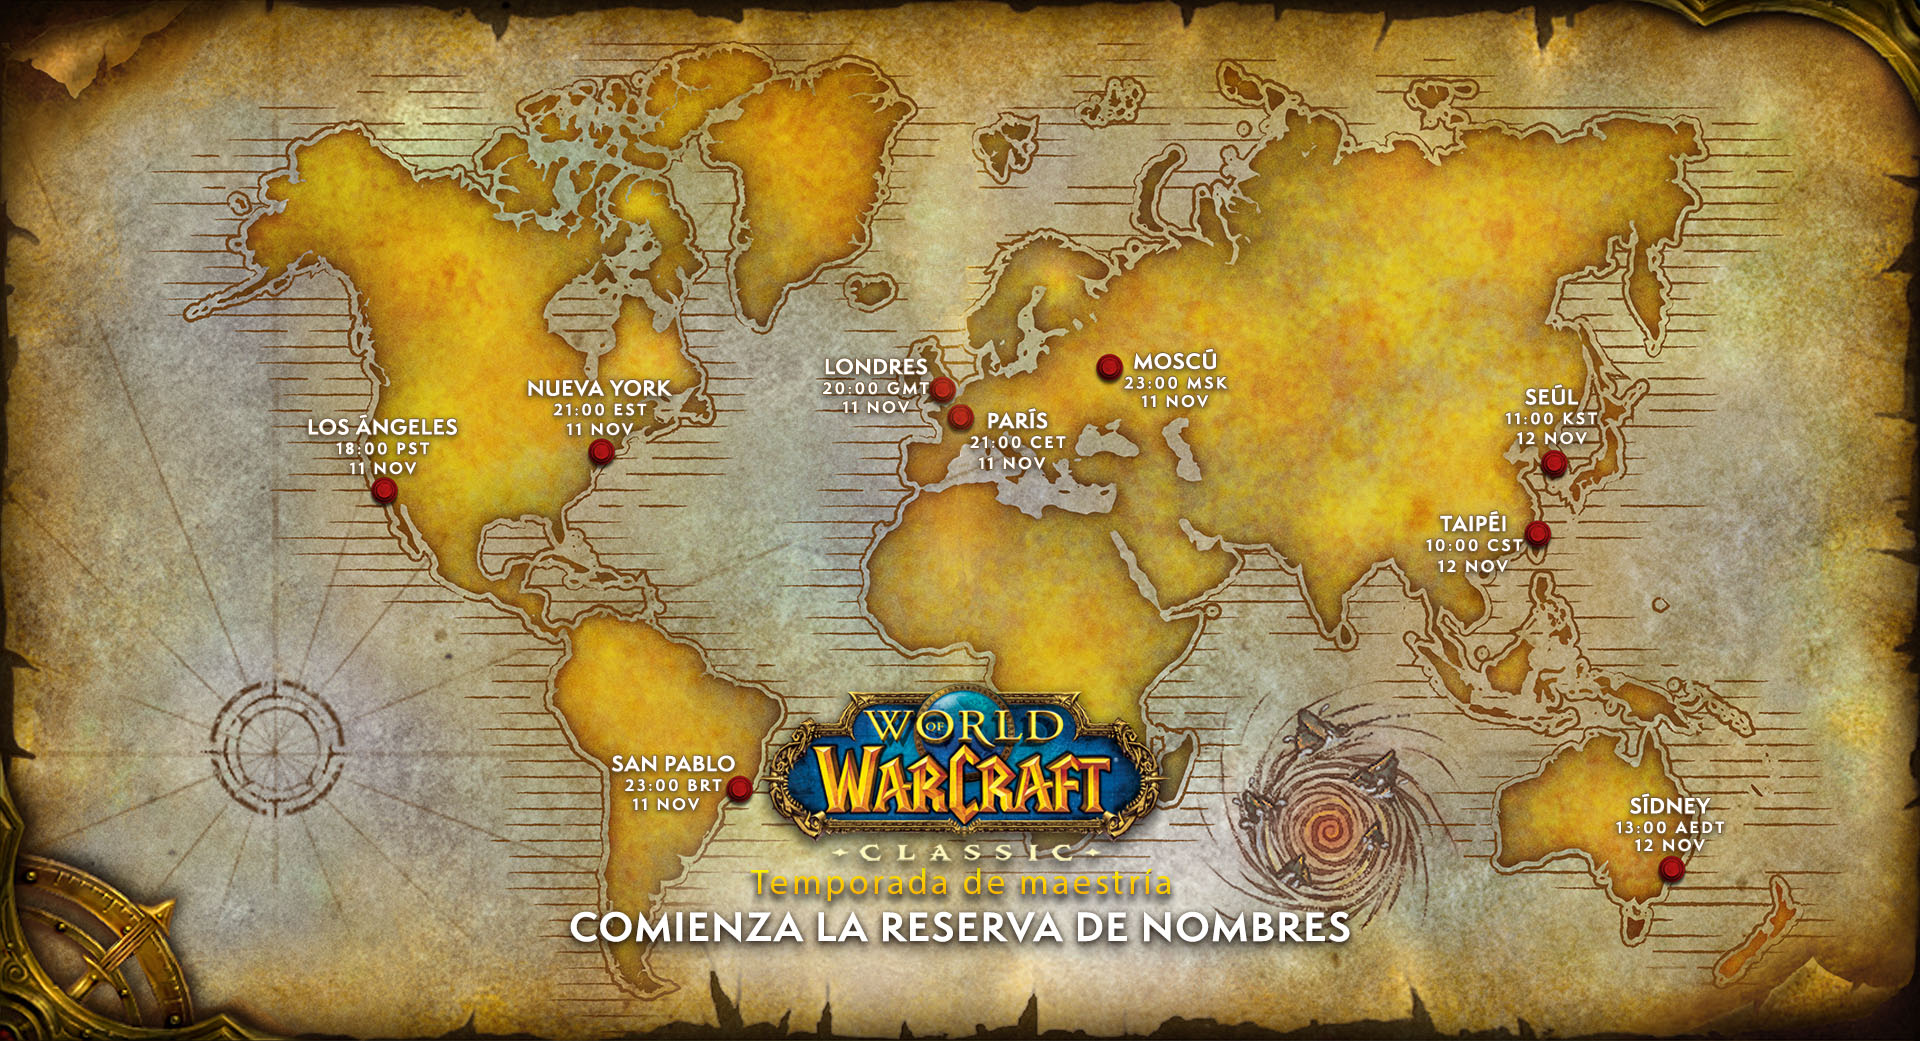 El 16 de noviembre, cuando los reinos de la temporada de maestría estén disponibles en todo el mundo, los jugadores de World of Warcraft